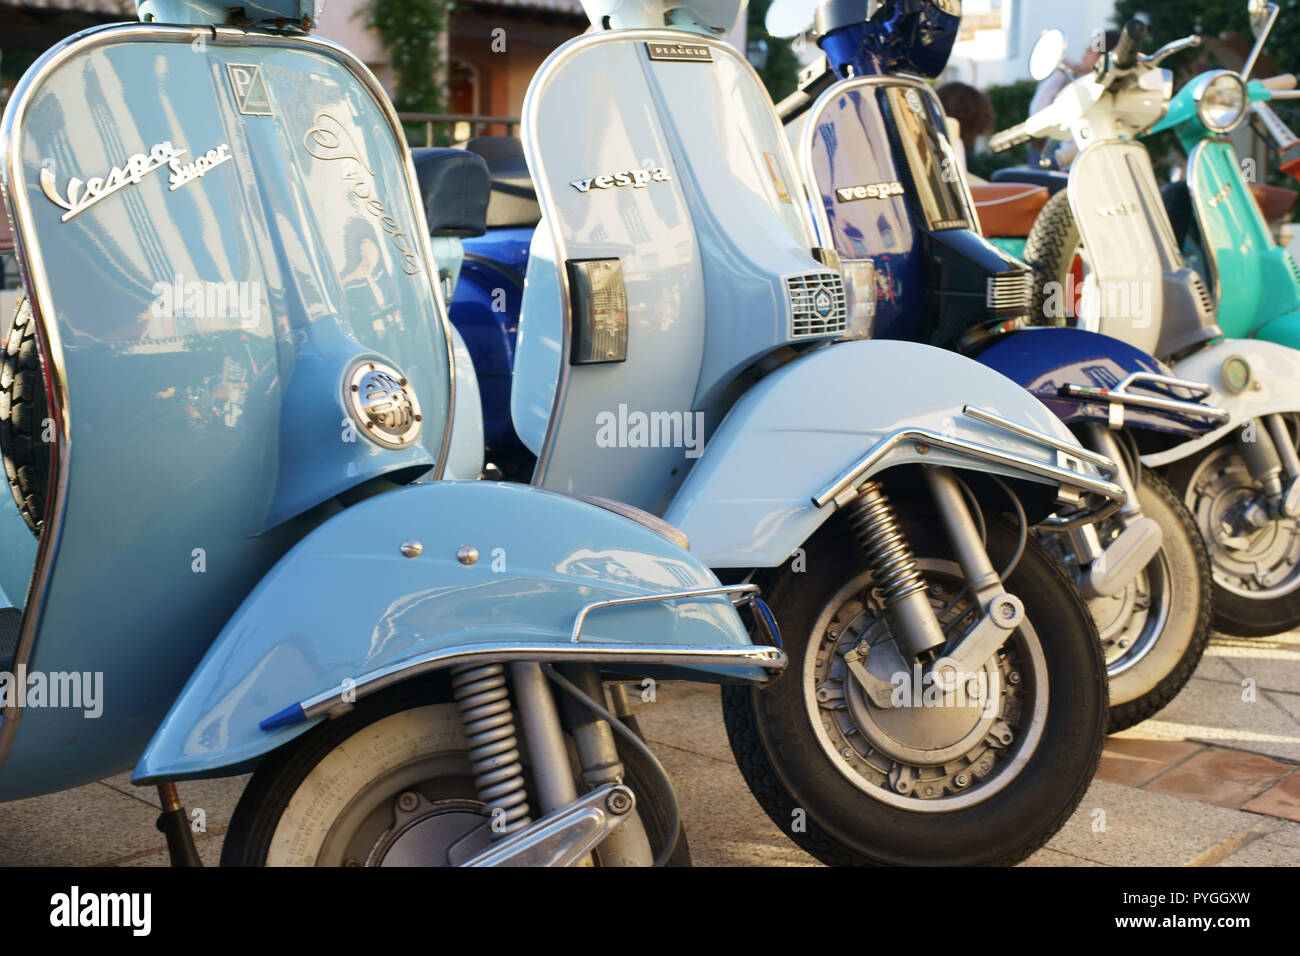 L'Italien Vespa Piaggio moto à Porto Cervo, Costa Smeralda, Sardaigne, Italie Banque D'Images